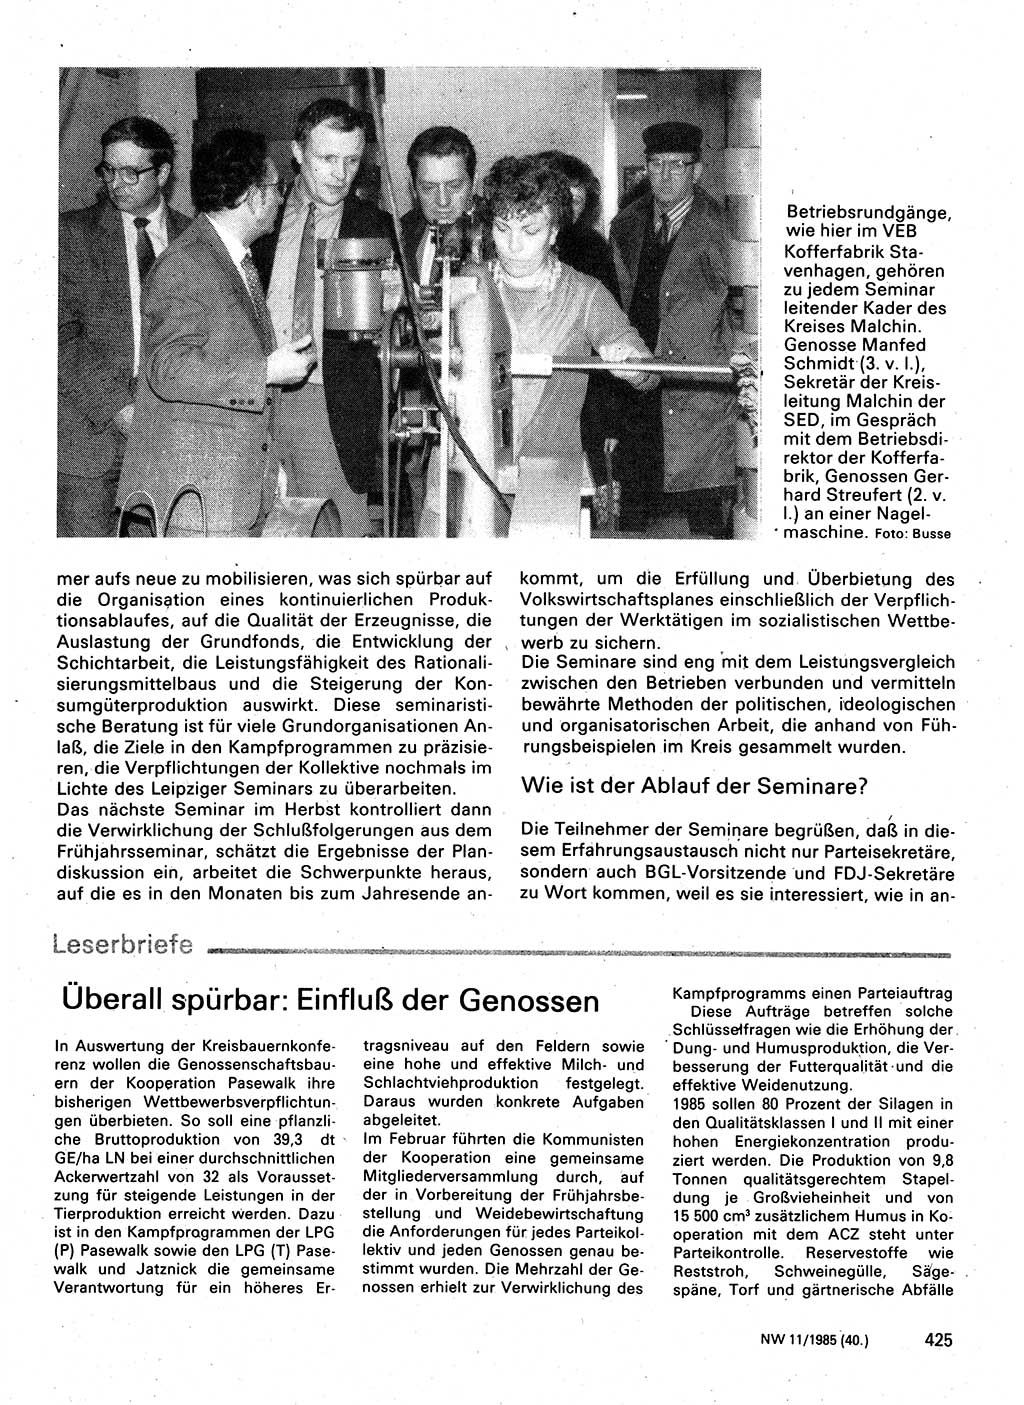 Neuer Weg (NW), Organ des Zentralkomitees (ZK) der SED (Sozialistische Einheitspartei Deutschlands) fÃ¼r Fragen des Parteilebens, 40. Jahrgang [Deutsche Demokratische Republik (DDR)] 1985, Seite 425 (NW ZK SED DDR 1985, S. 425)